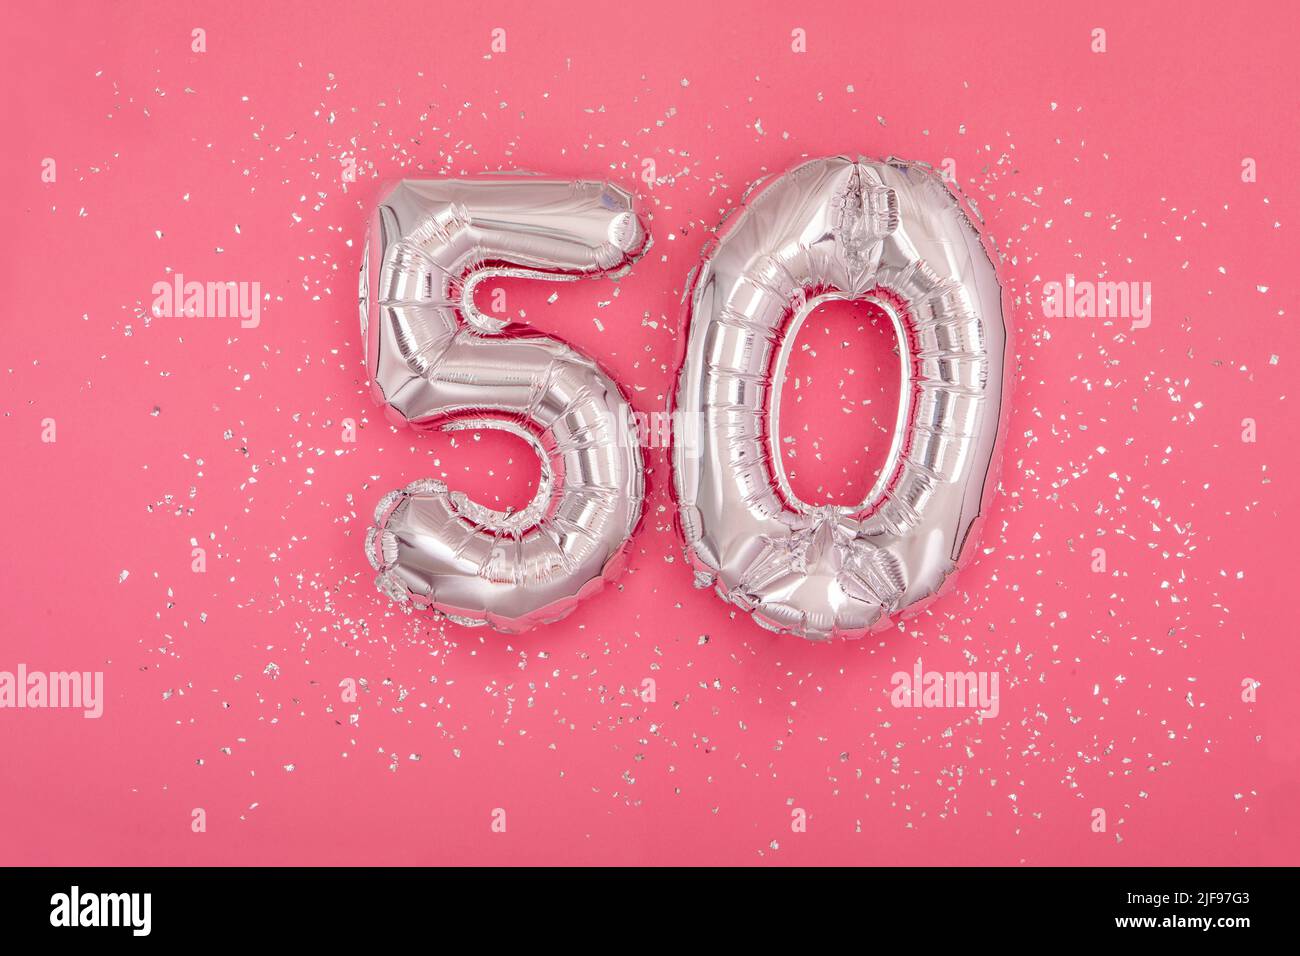 Globo de plata en forma de número cincuenta 50 de fondo rosa Foto de stock